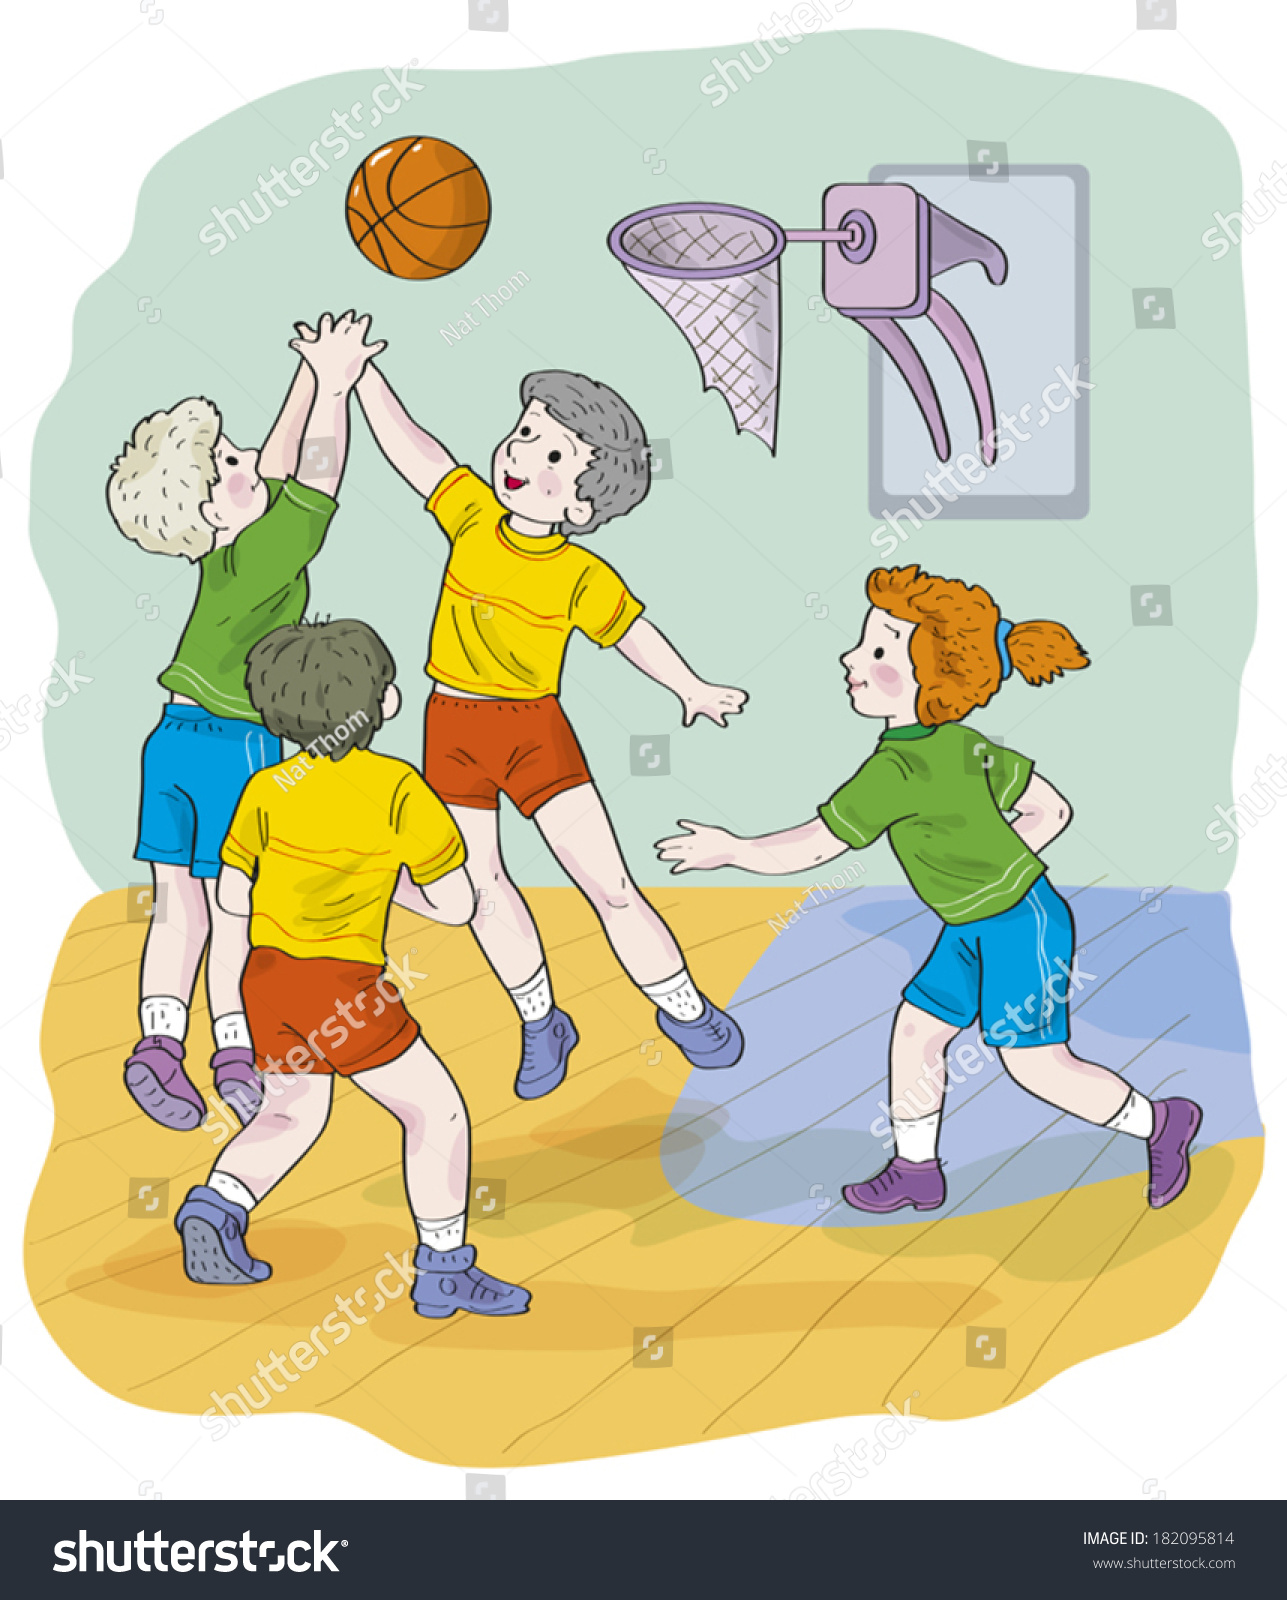 Баскетбол в картинках для школьников